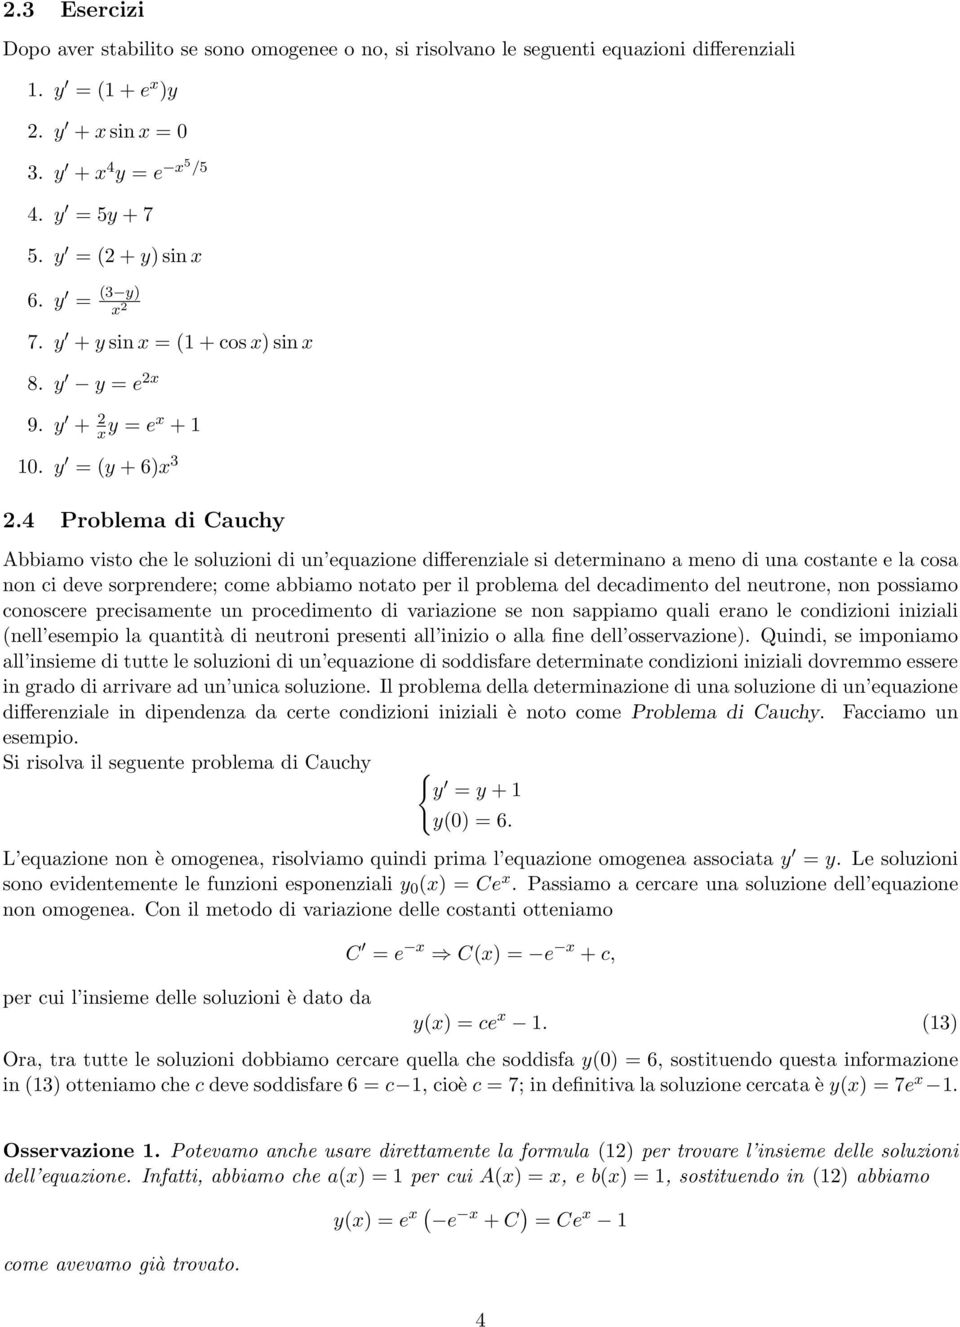 4 Problema di Cauchy Abbiamo visto che le soluzioni di un equazione differenziale si determinano a meno di una costante e la cosa non ci deve sorprendere; come abbiamo notato per il problema del